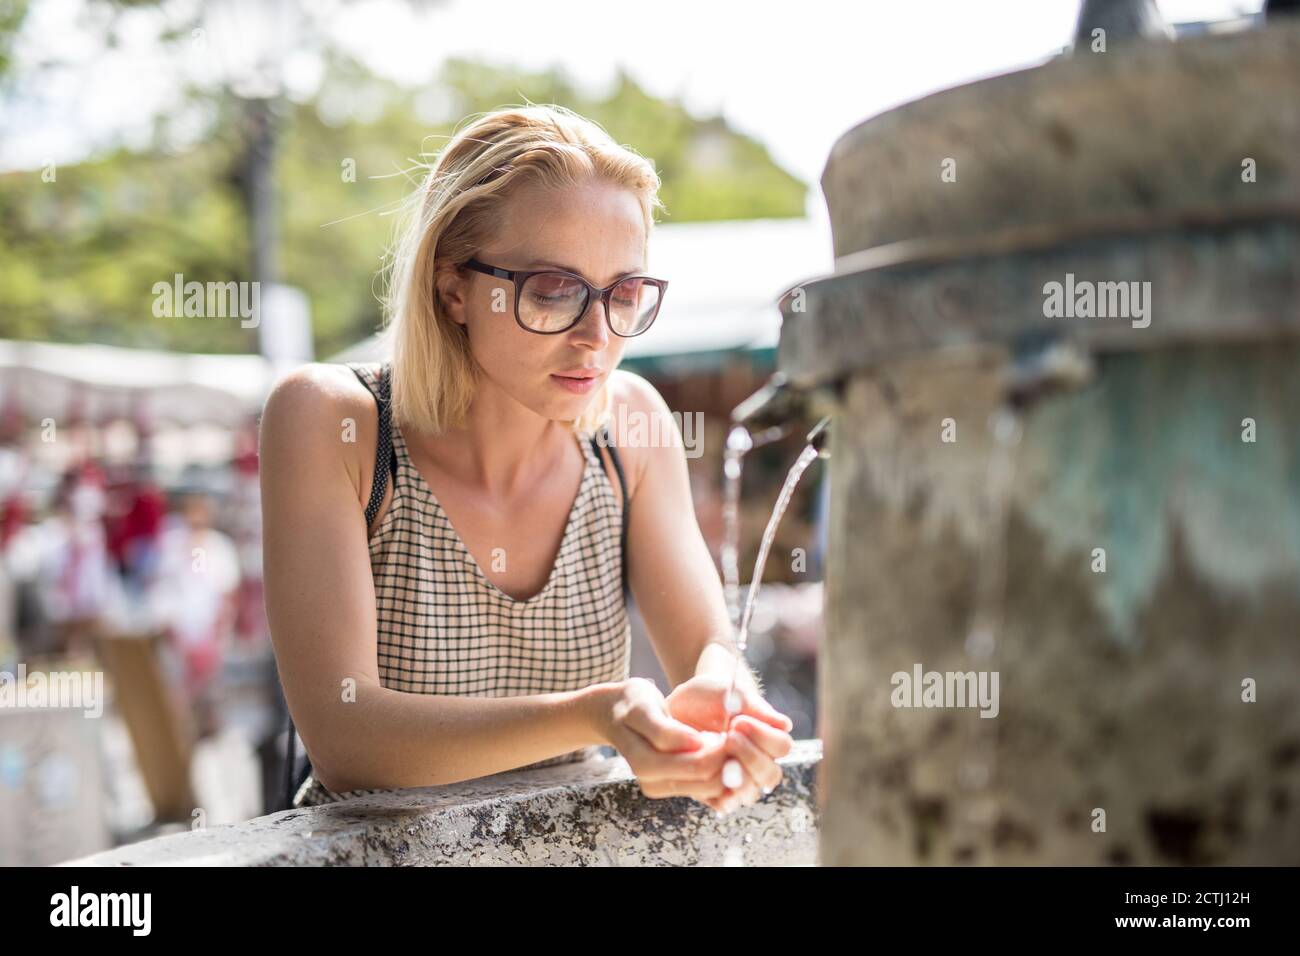 Mujer cucasiana joven sedienta de agua potable de la ciudad pública fuente en un caluroso día de verano Foto de stock